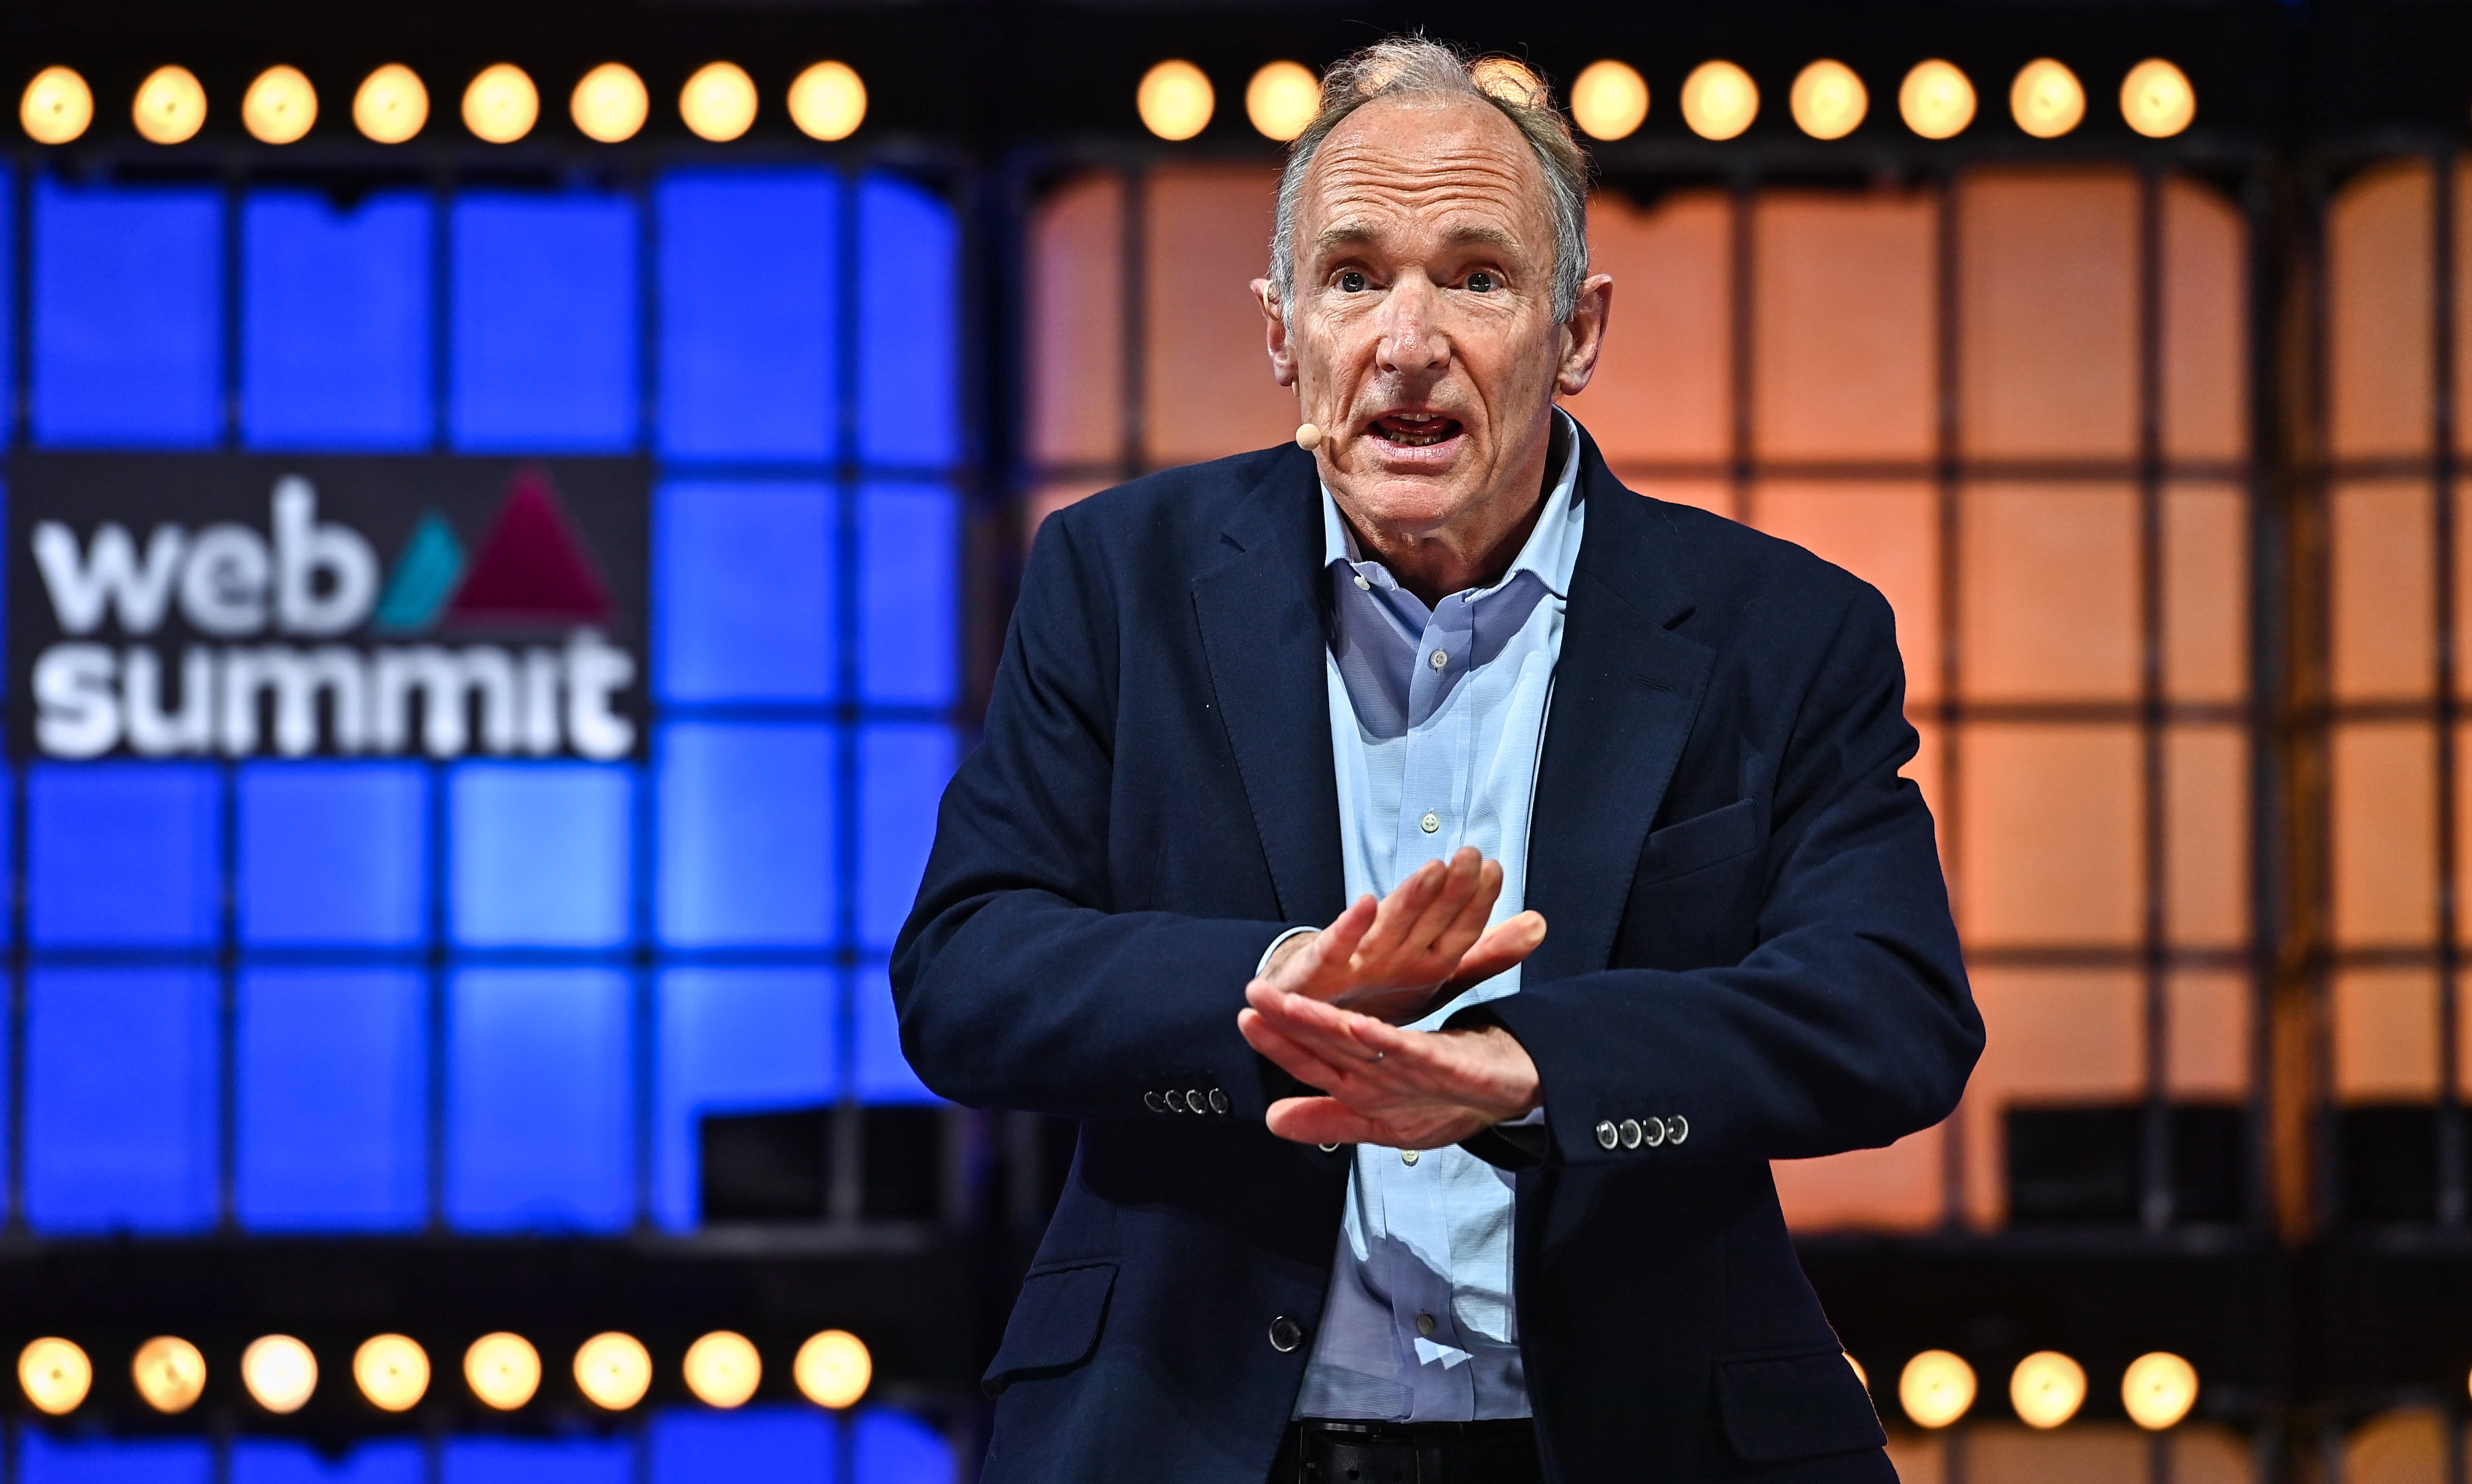 Nhà sáng lập web Tim Berners Lee phát biểu tại hội thảo Web Summit diễn ra tại Lisbon, Bồ Đào Nha.